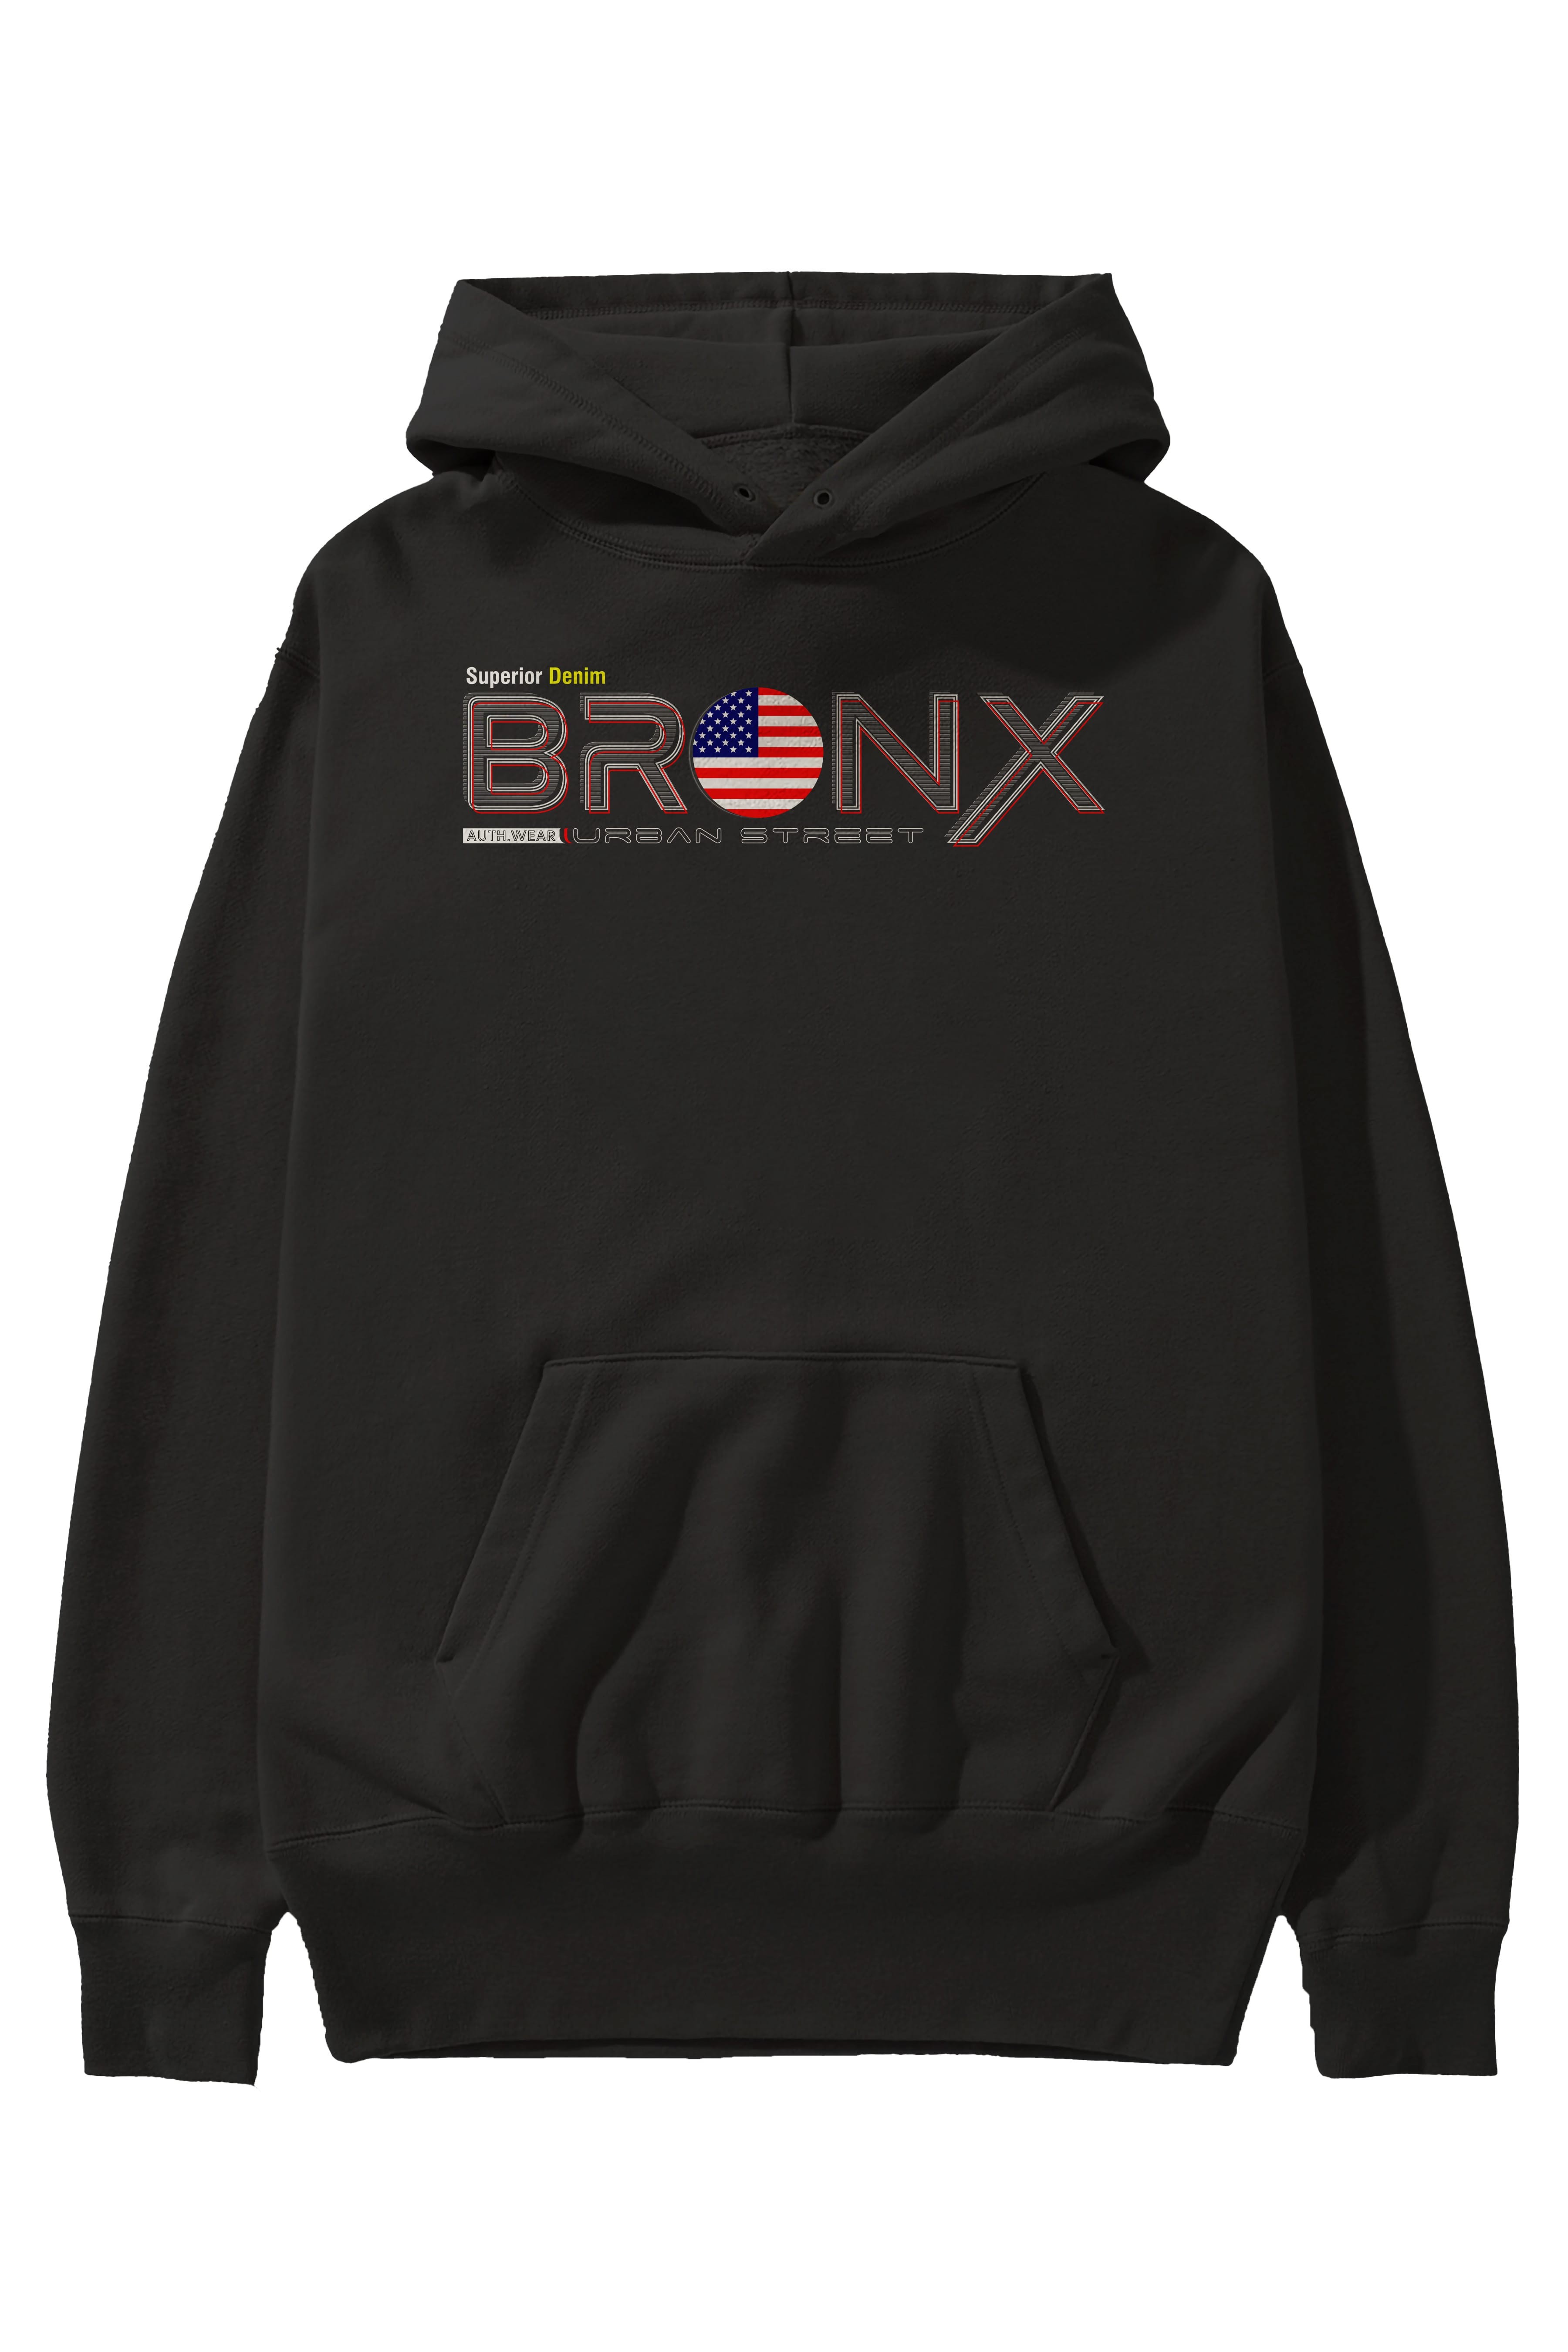 Bronx Ön Baskılı Oversize Hoodie Kapüşonlu Sweatshirt Erkek Kadın Unisex